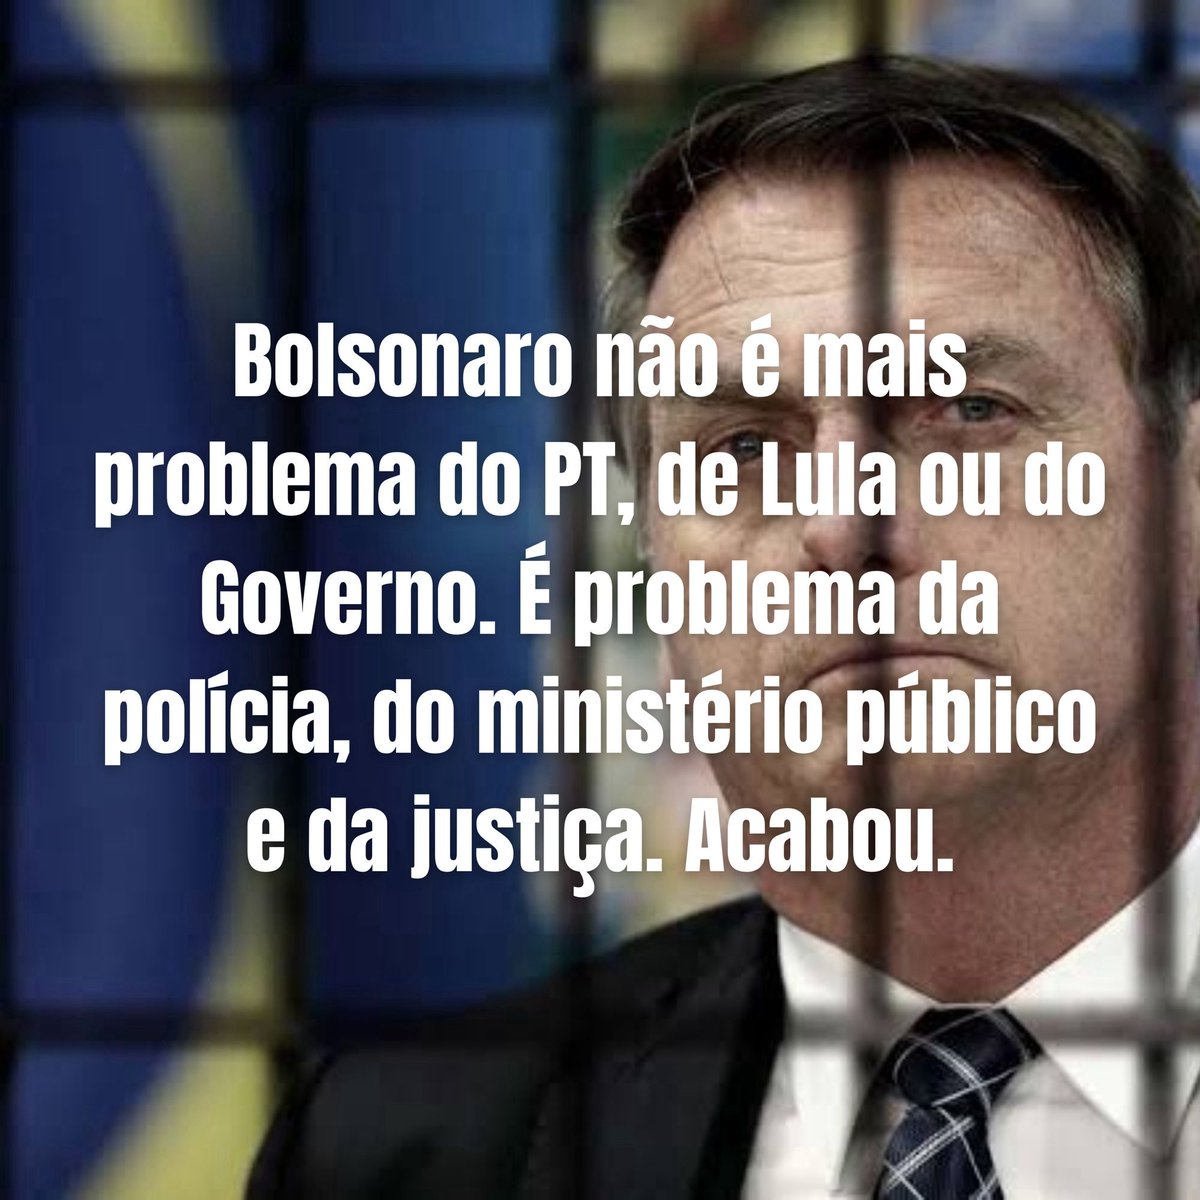 #LulaBrasilEmFoco Bolsonaro na prisão juntos com os seus aliados.